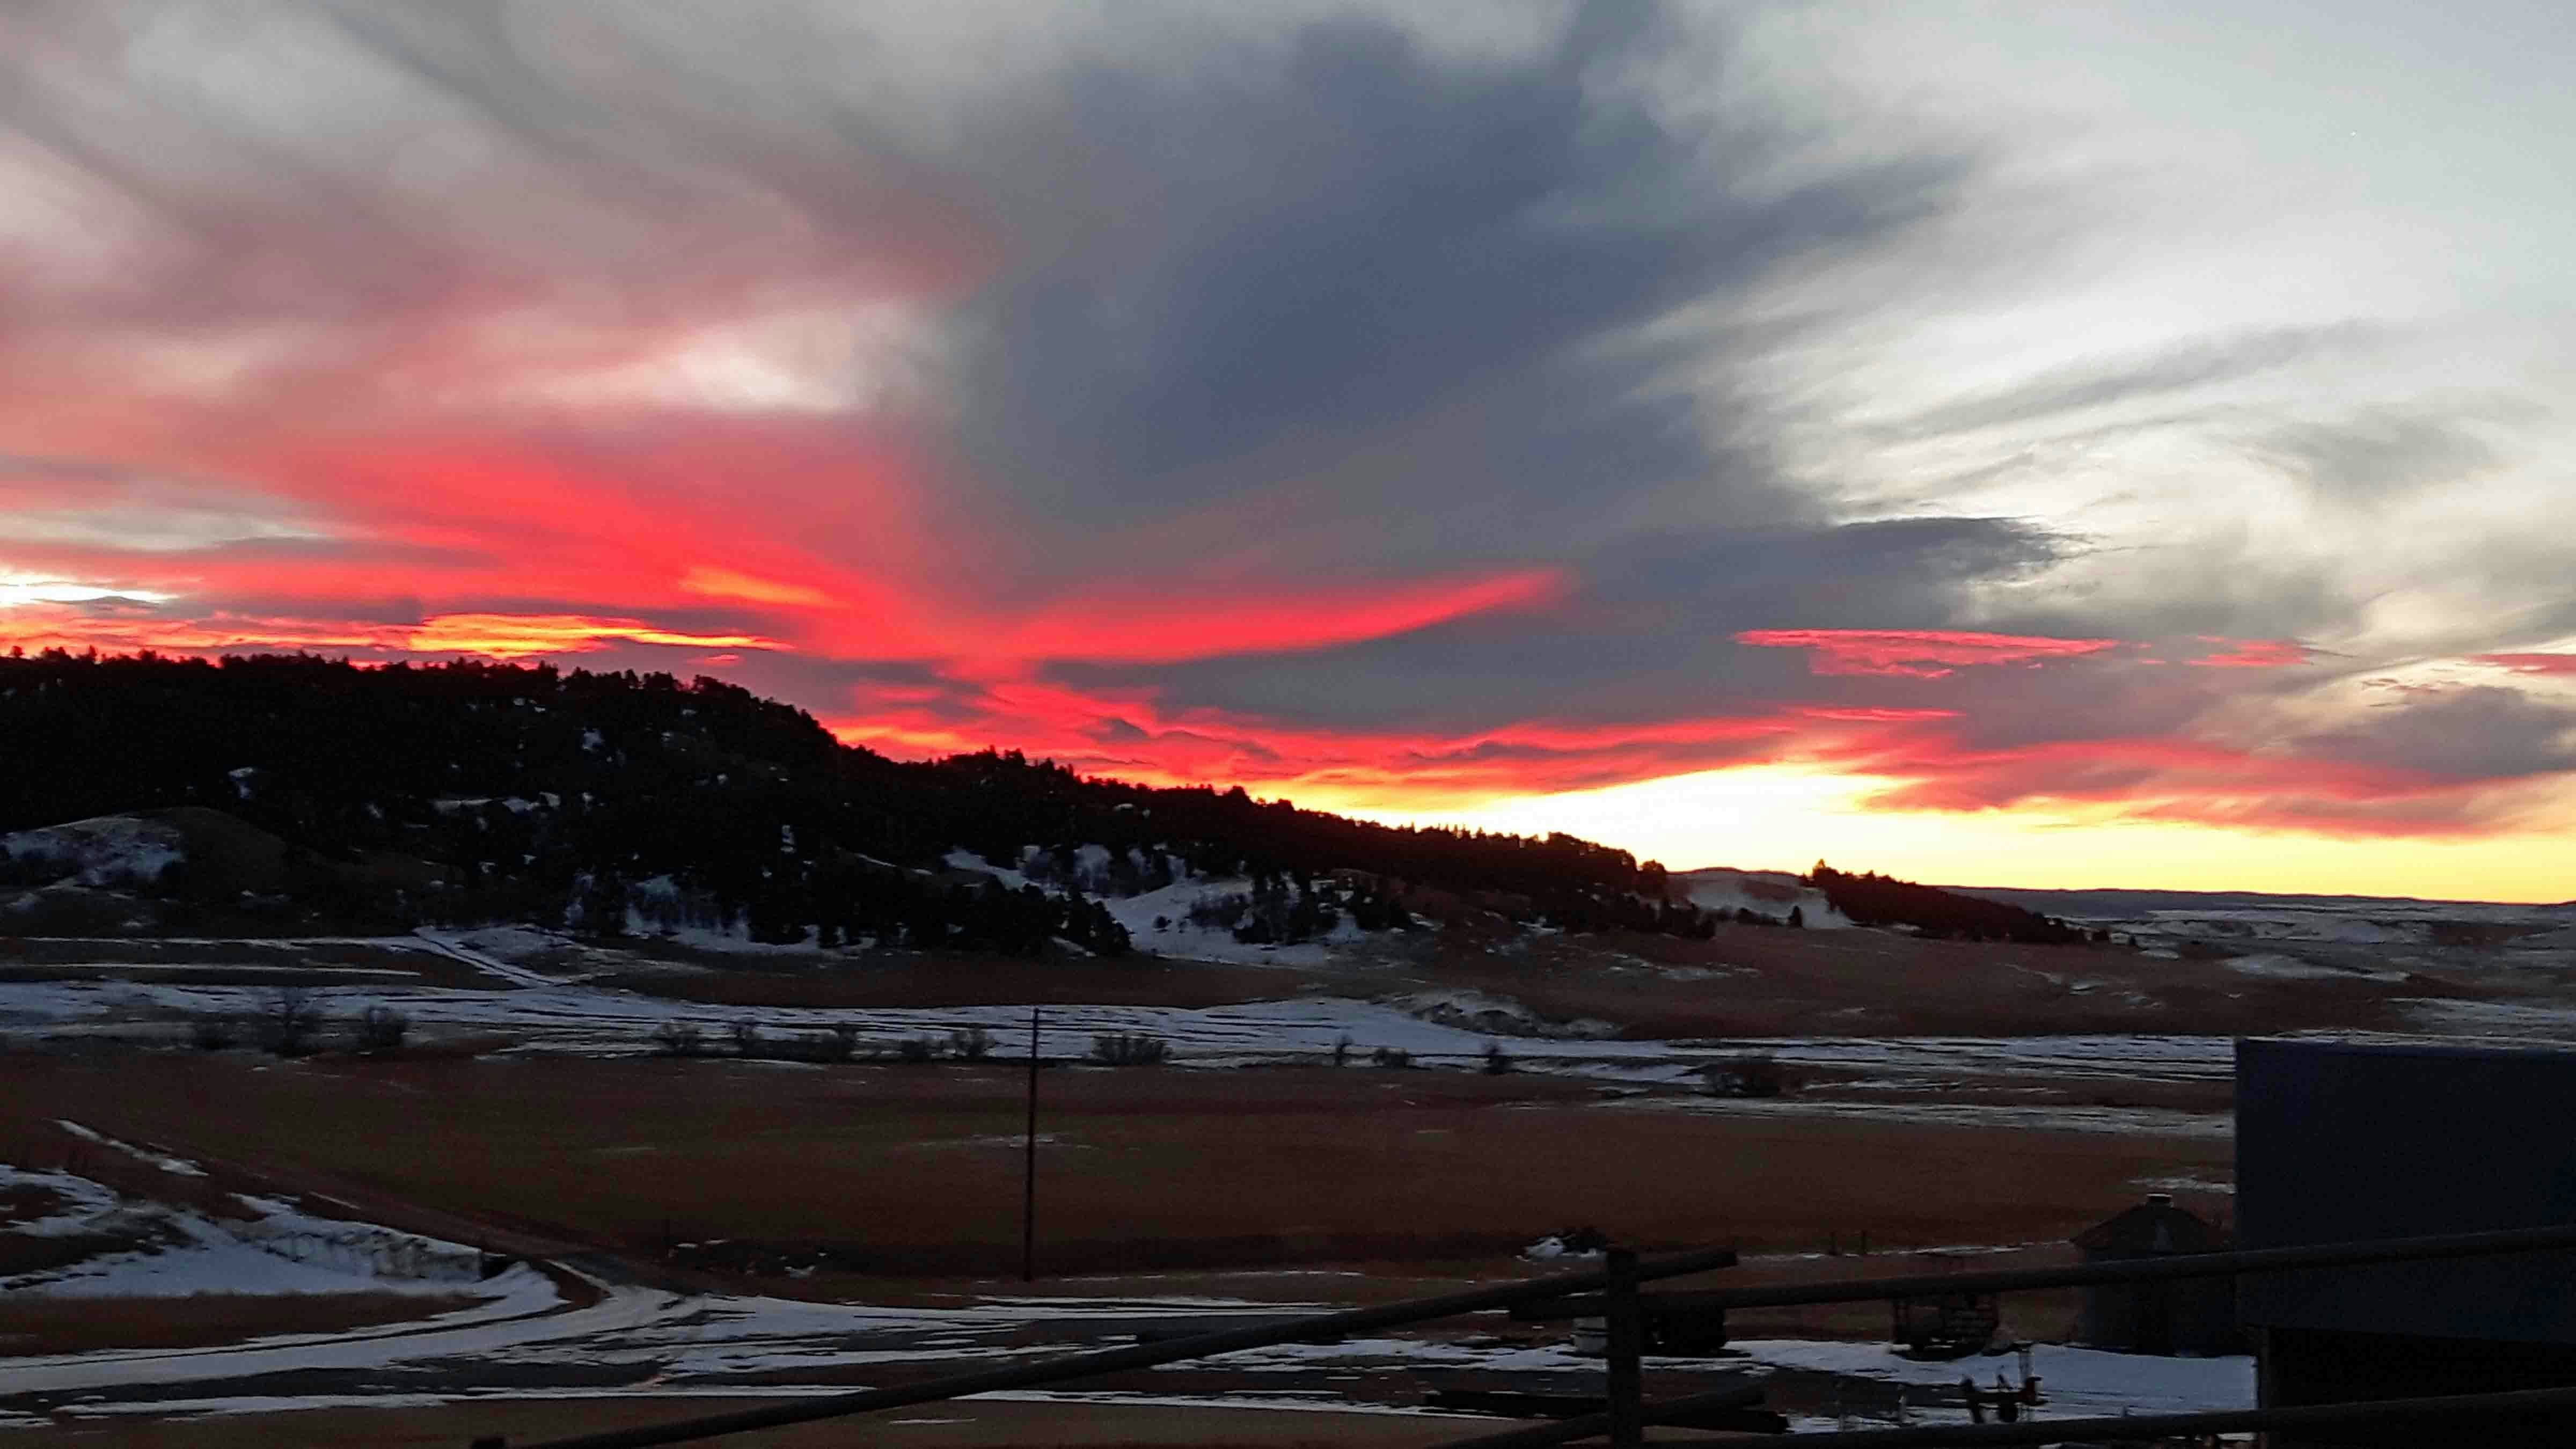 Sunrise in Sundance, Wyoming